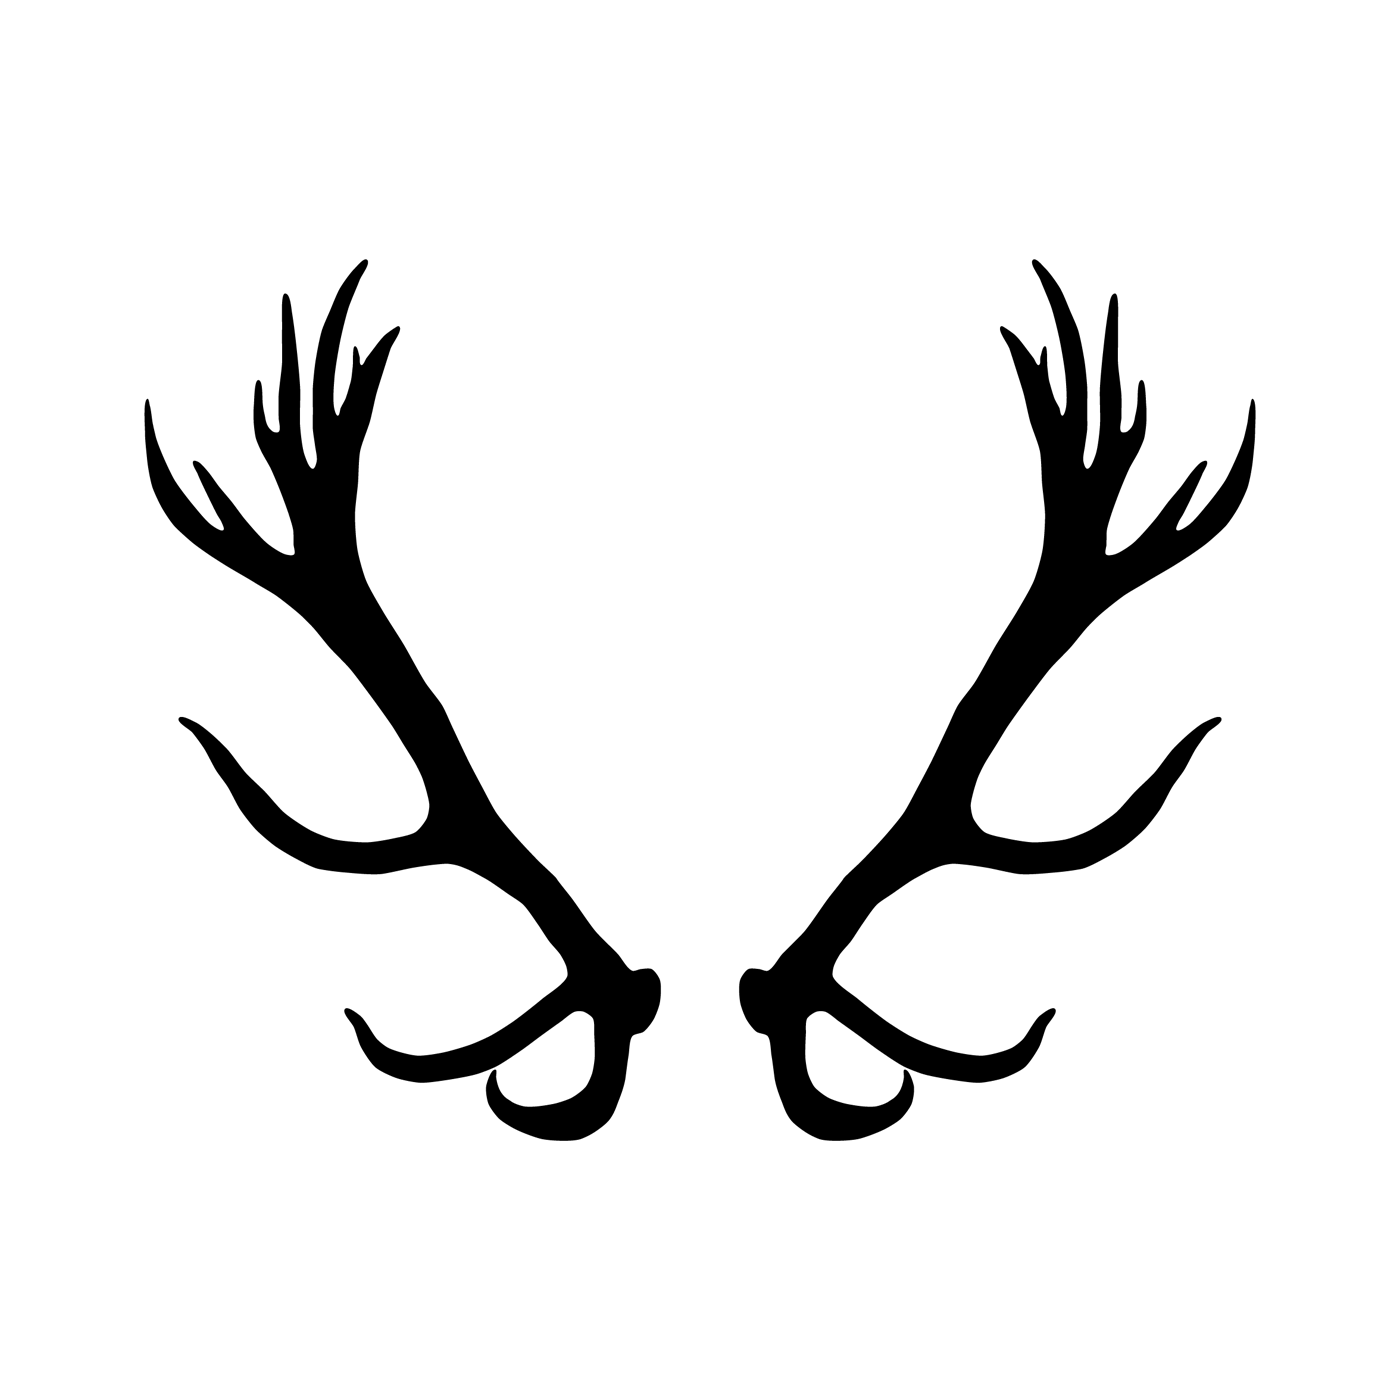 Deer Antlers - Deer Antlers Temporary Tattoo Momentary Ink. 